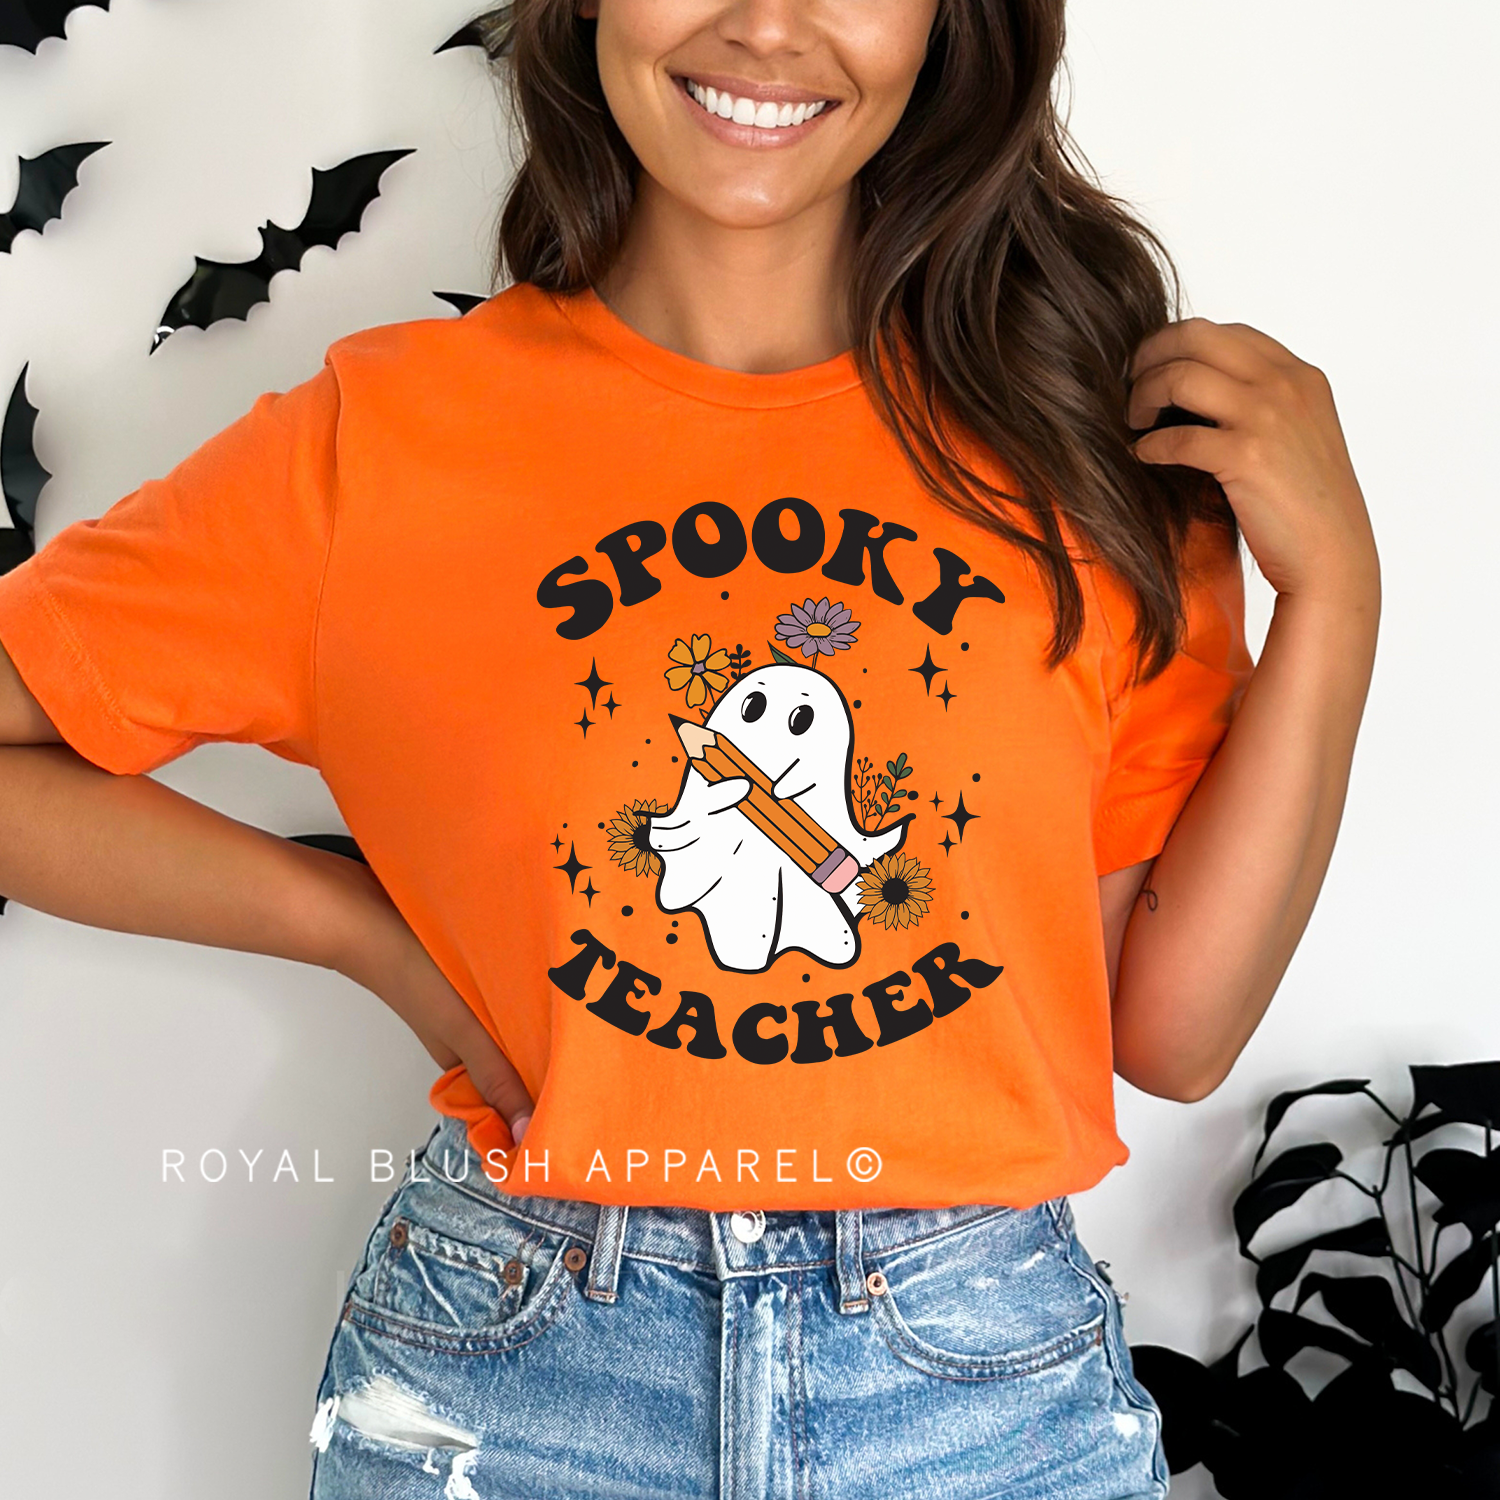 Spooky Teacher Relaxed Unisex T-shirt